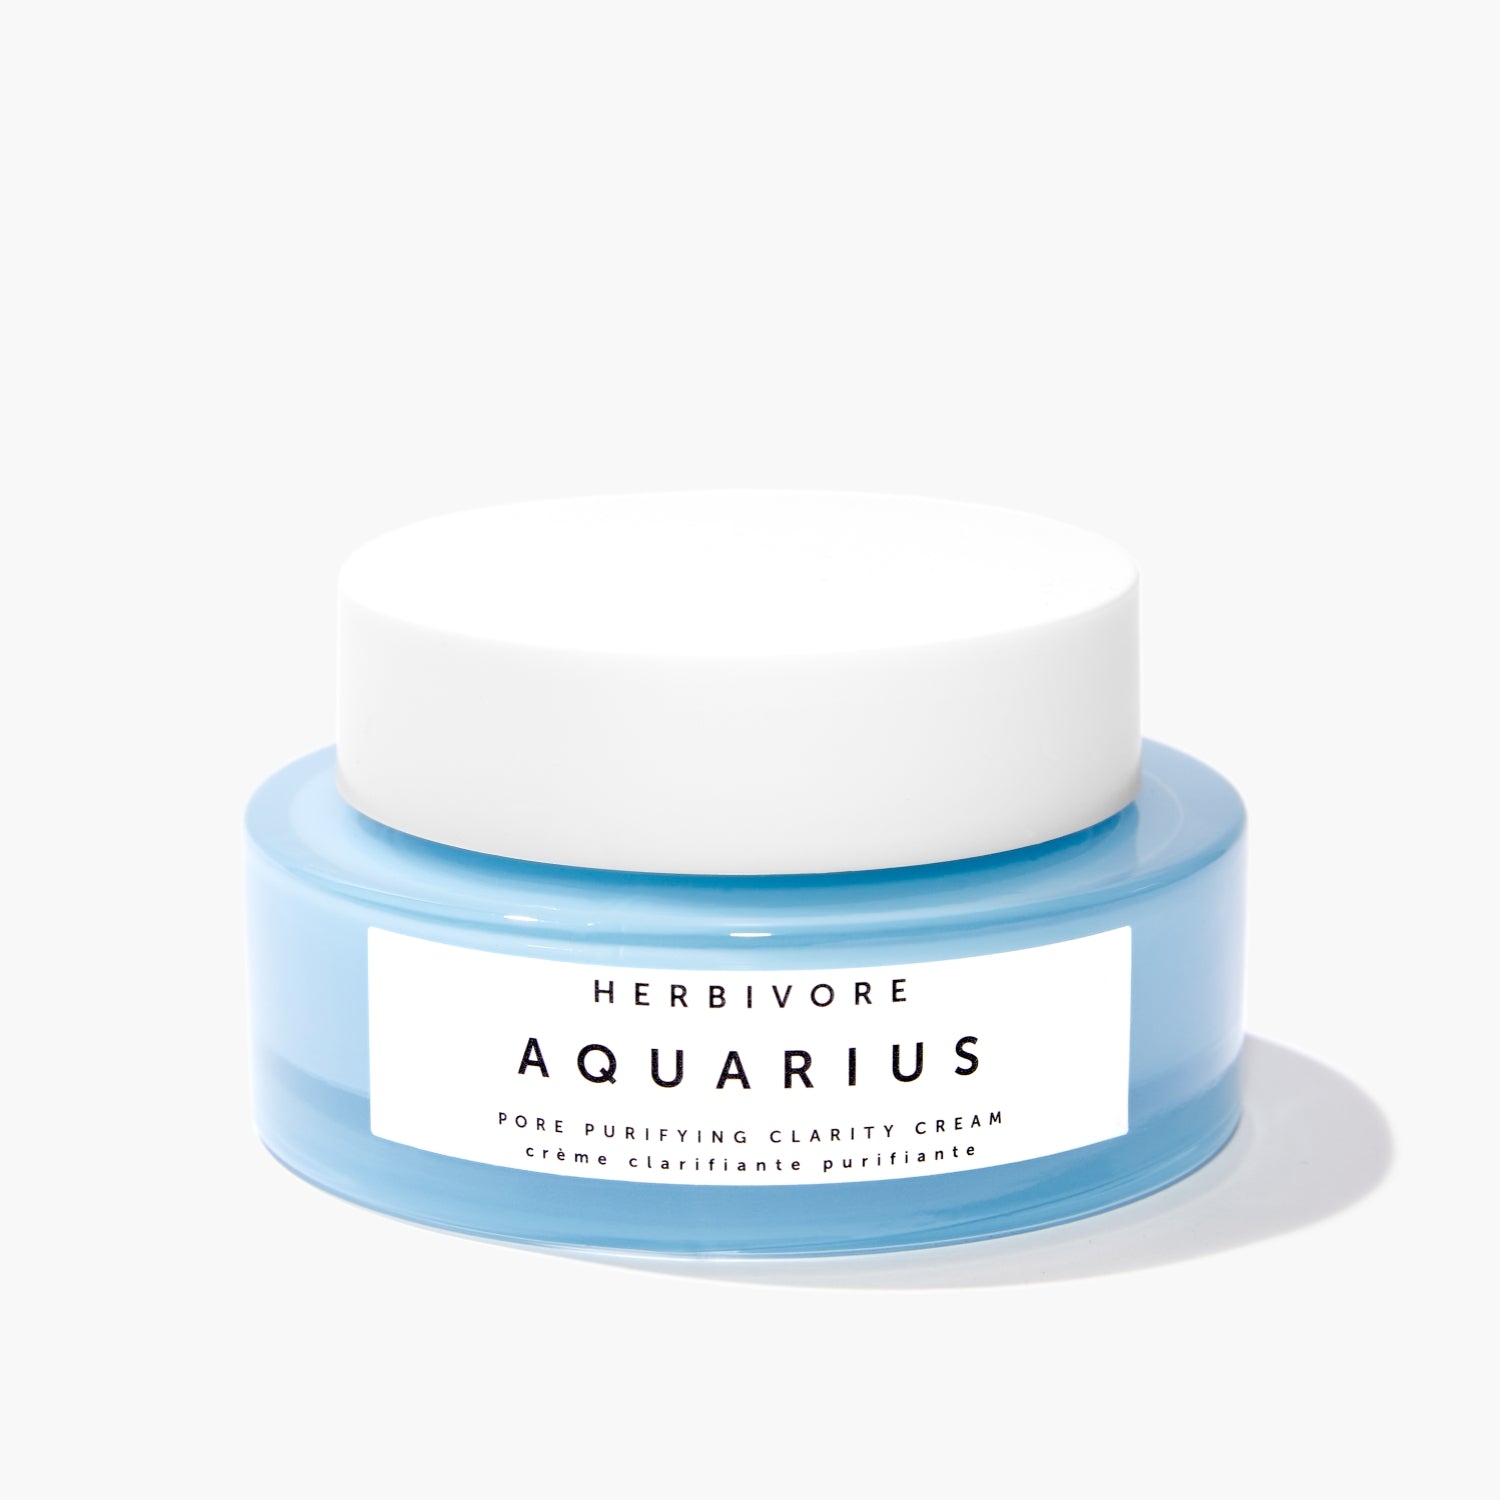 AQUARIUS Pore Purifying Clarity Cream